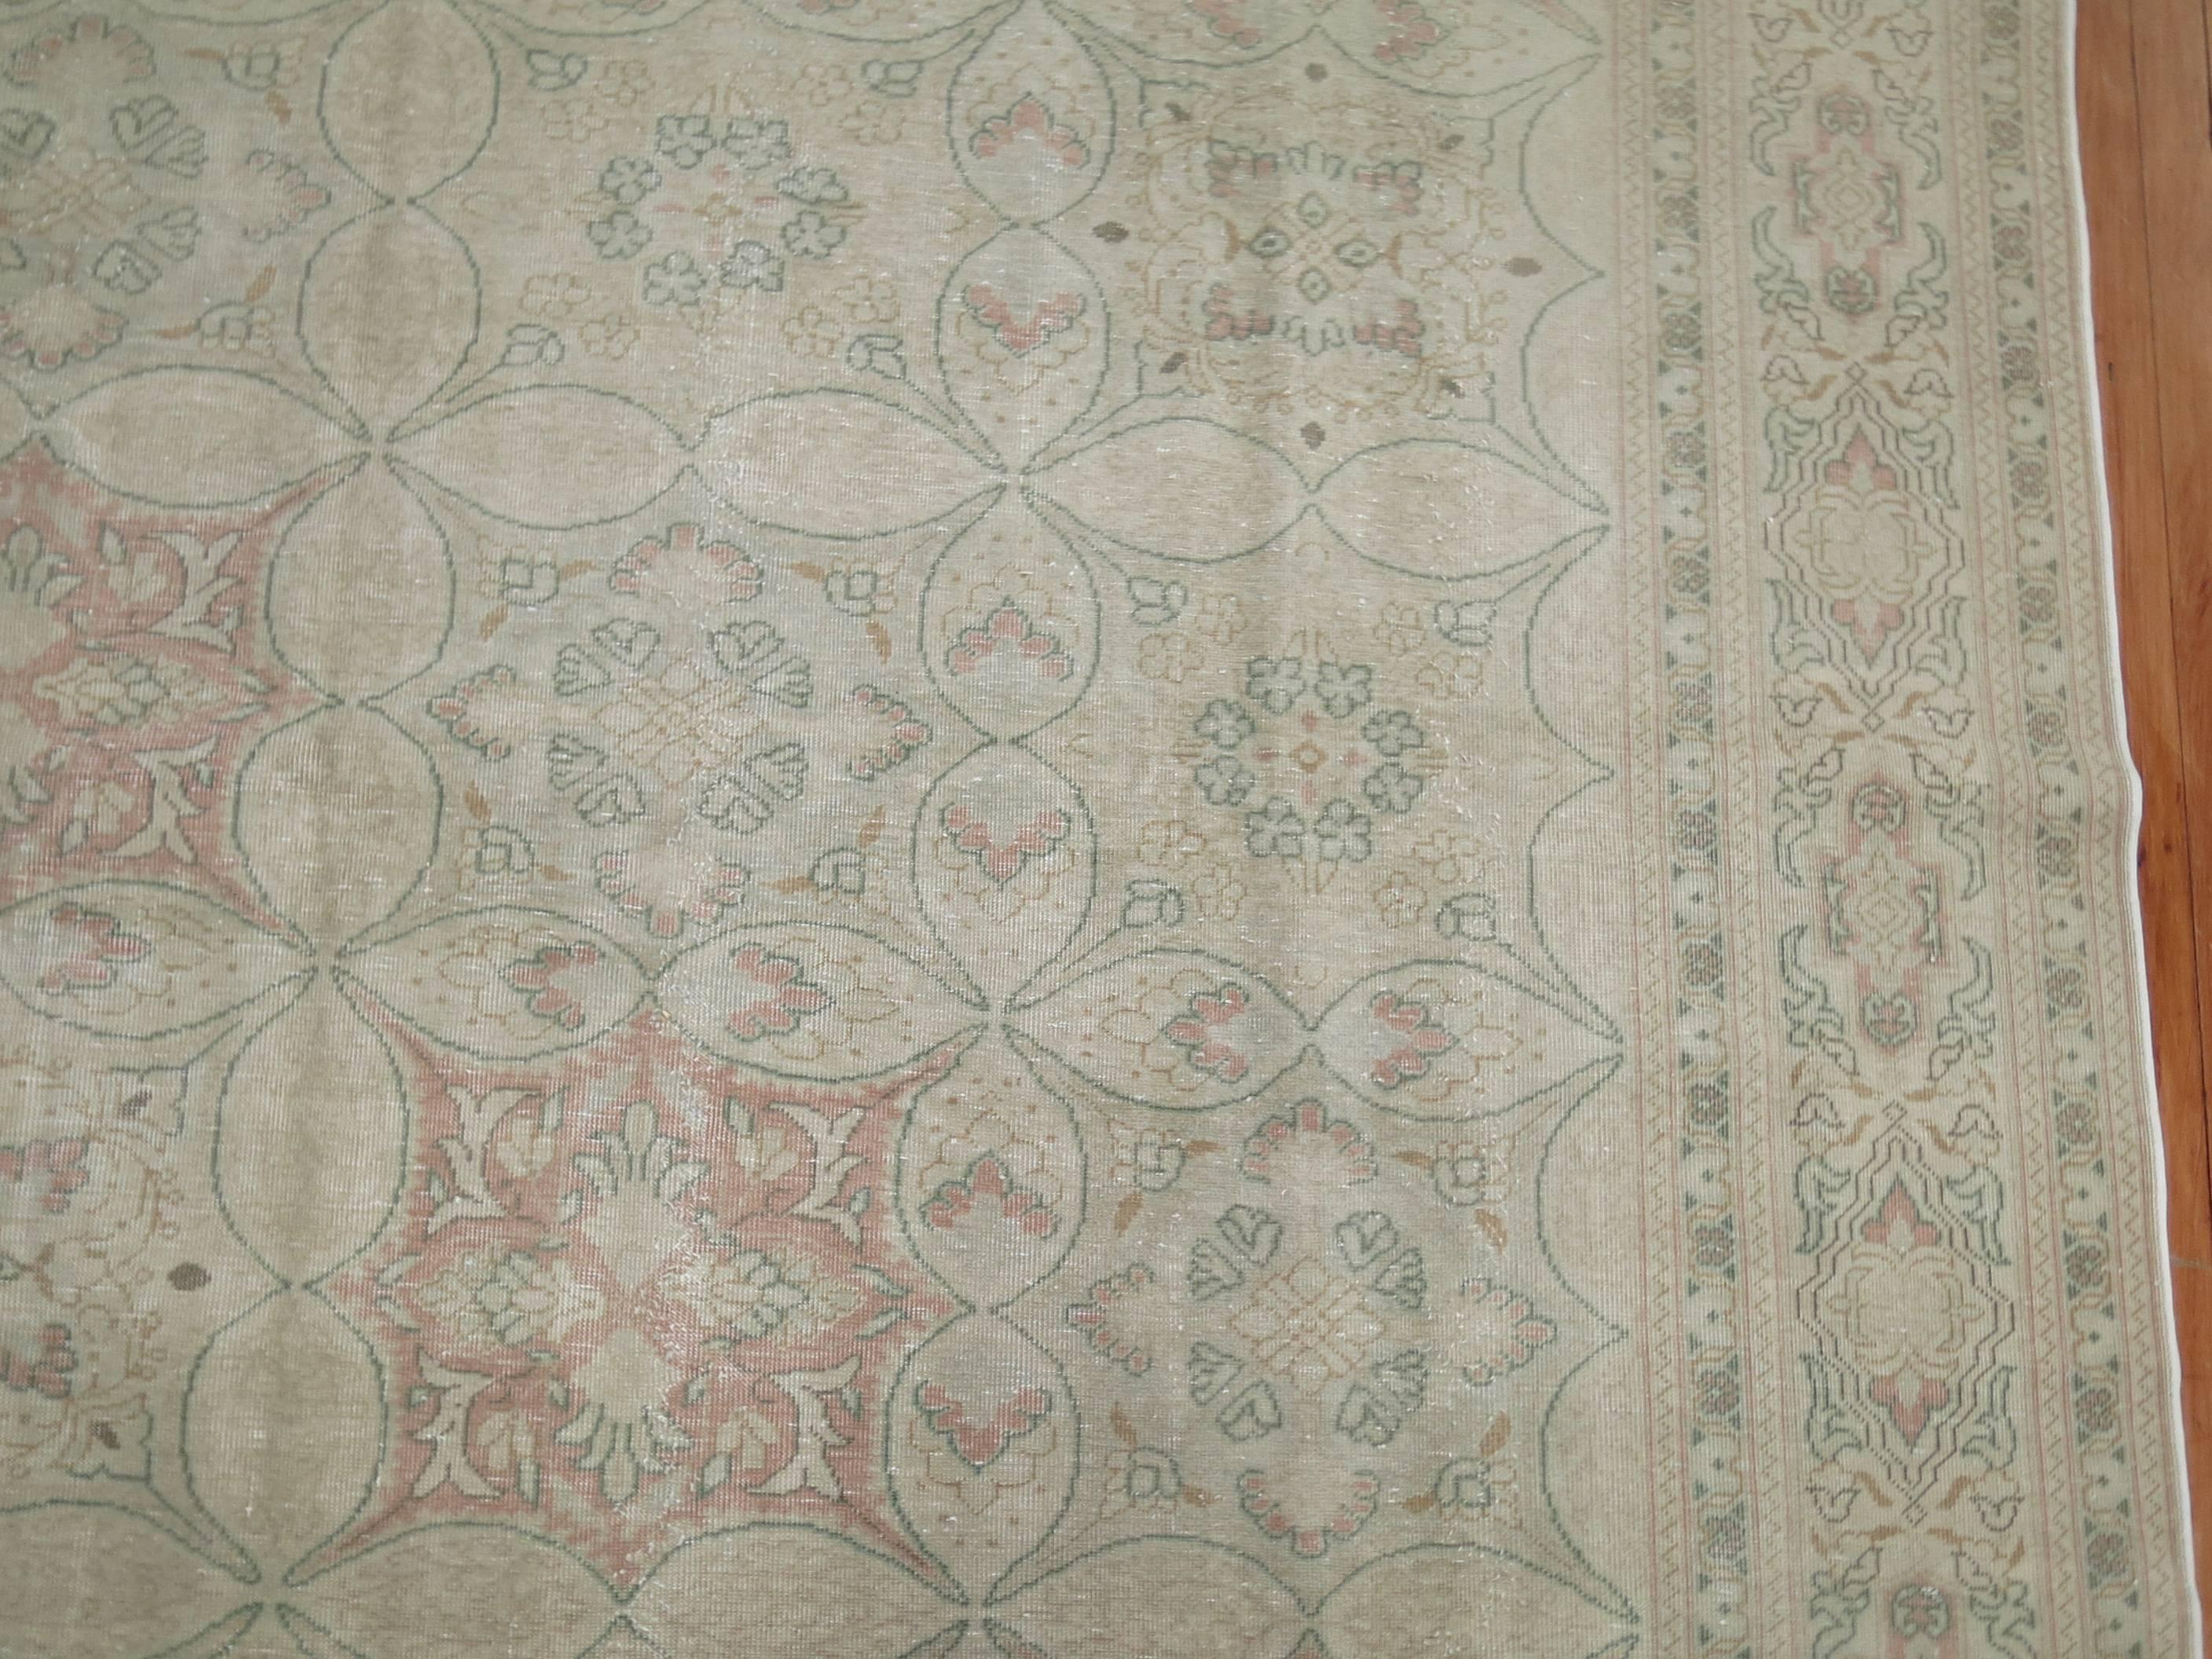 Ein eleganter türkischer Sivas-Teppich in zarten Rosa-, Grün- und Elfenbeintönen.

8'2'' x 12'3''

Sivas ist eine Stadt in der nördlichen Zentraltürkei, die eine wichtige Produktionsstätte für türkische Teppiche ist, die auf persischen Mustern